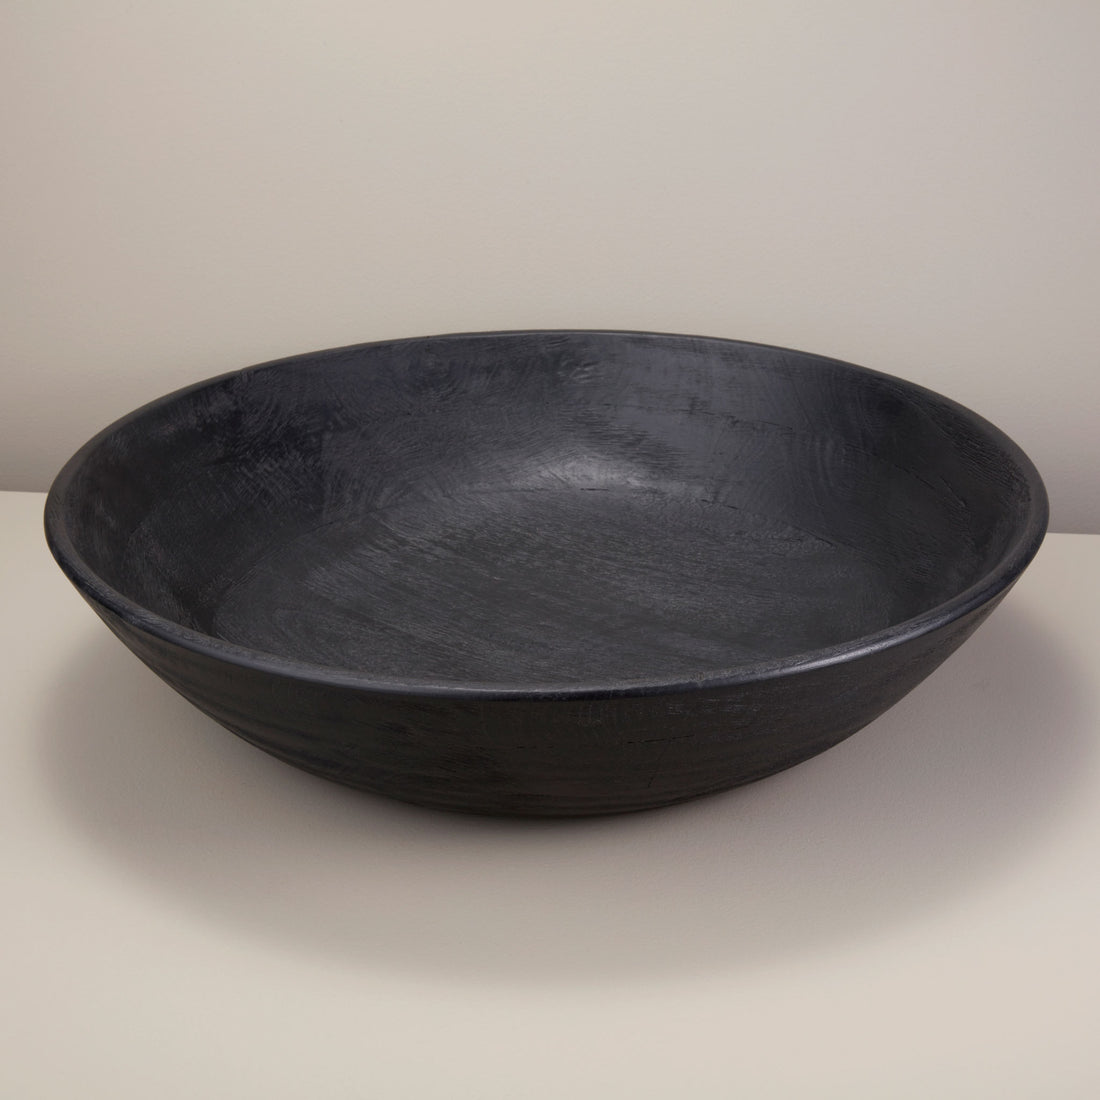 Tam Stoneware Pinch Bowl, Terracotta Rose, Set of 2